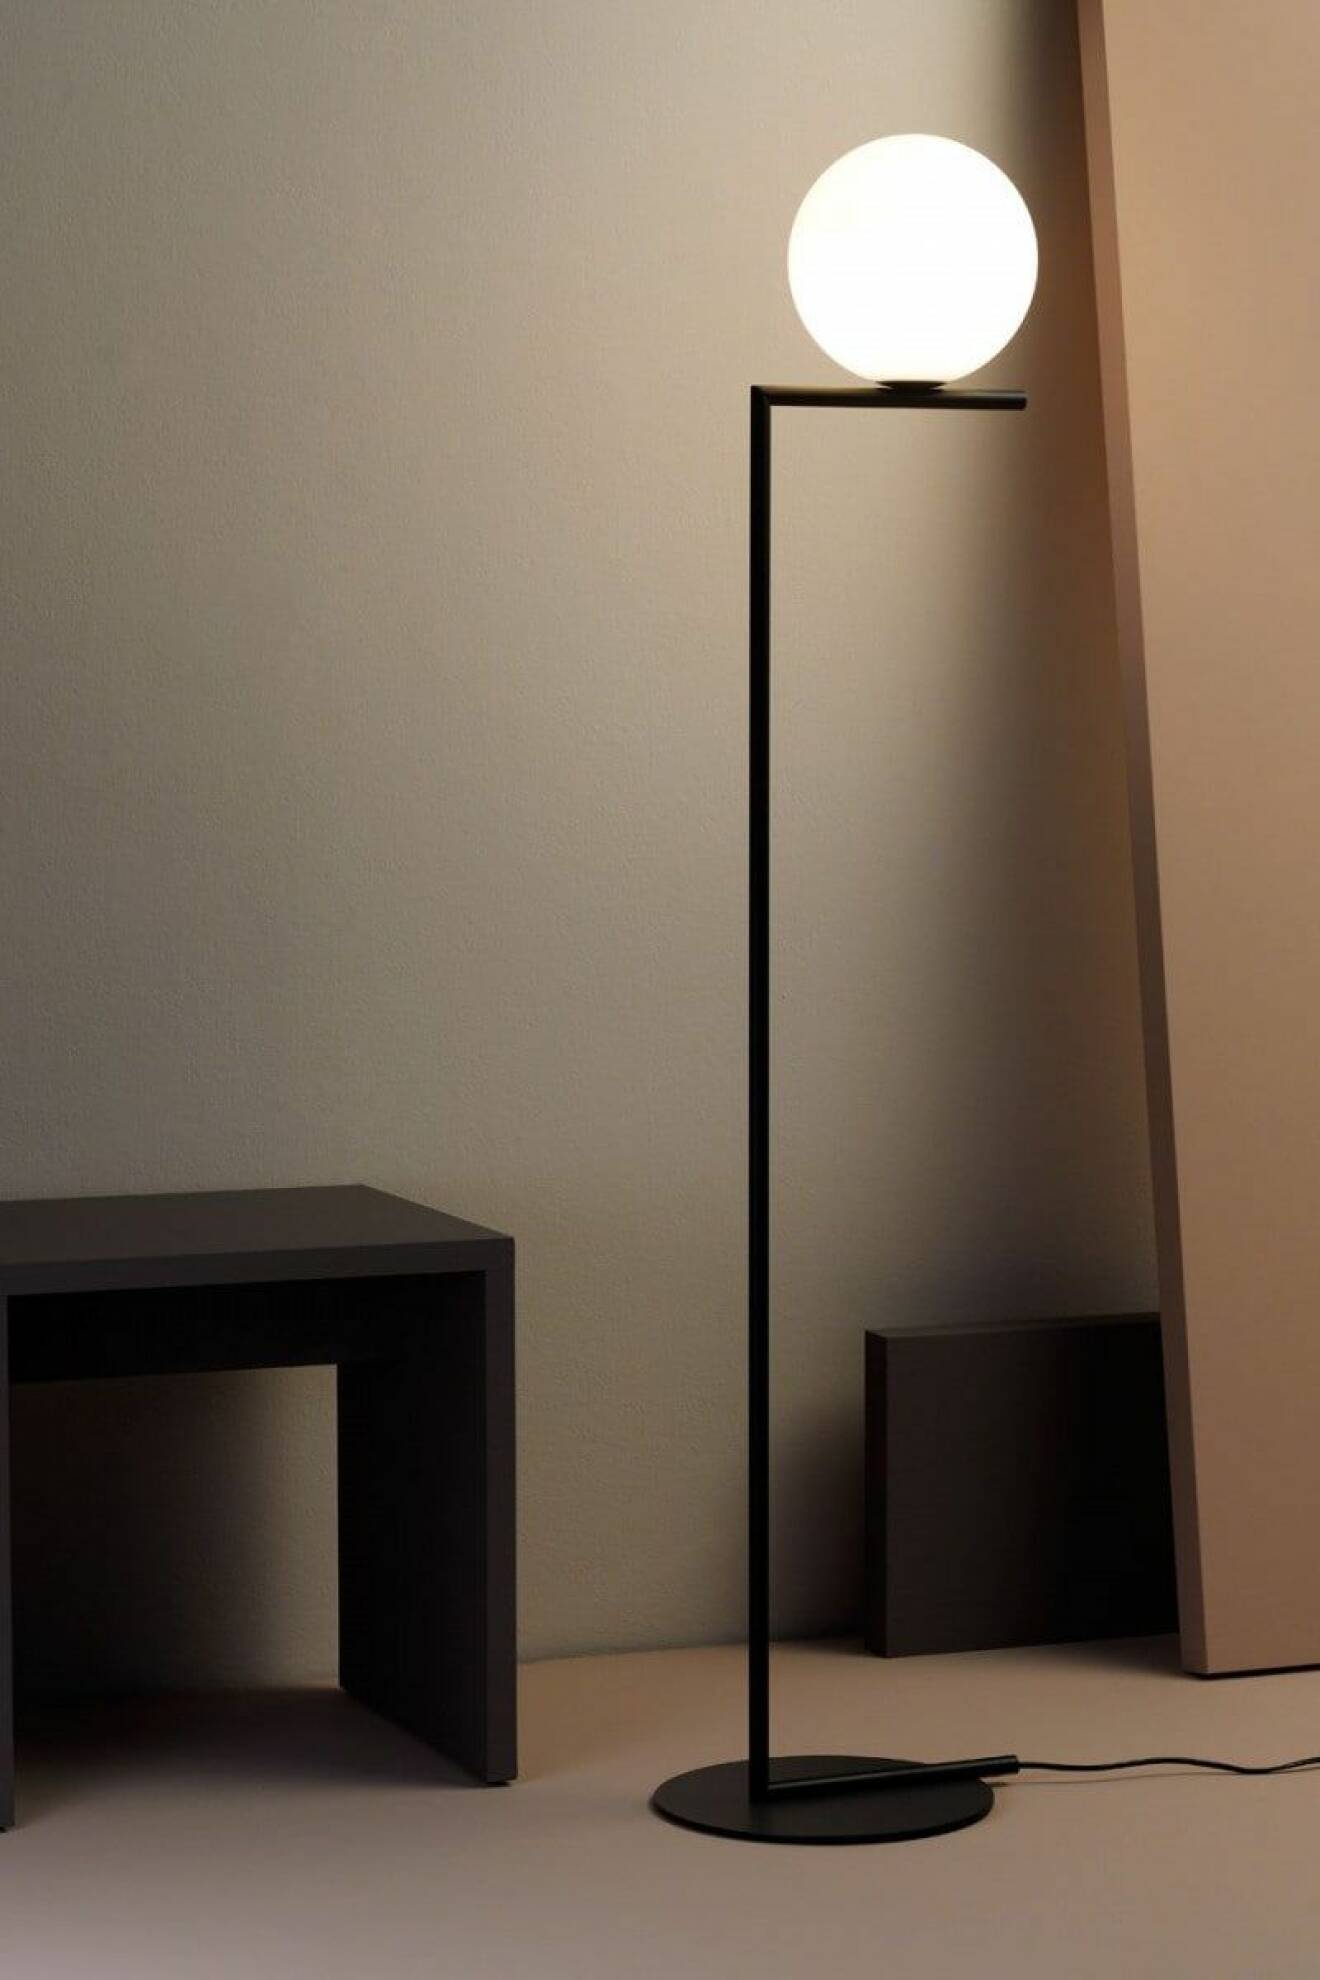 Golvlampan IC Lights från Flos är en stilsäker designklassiker